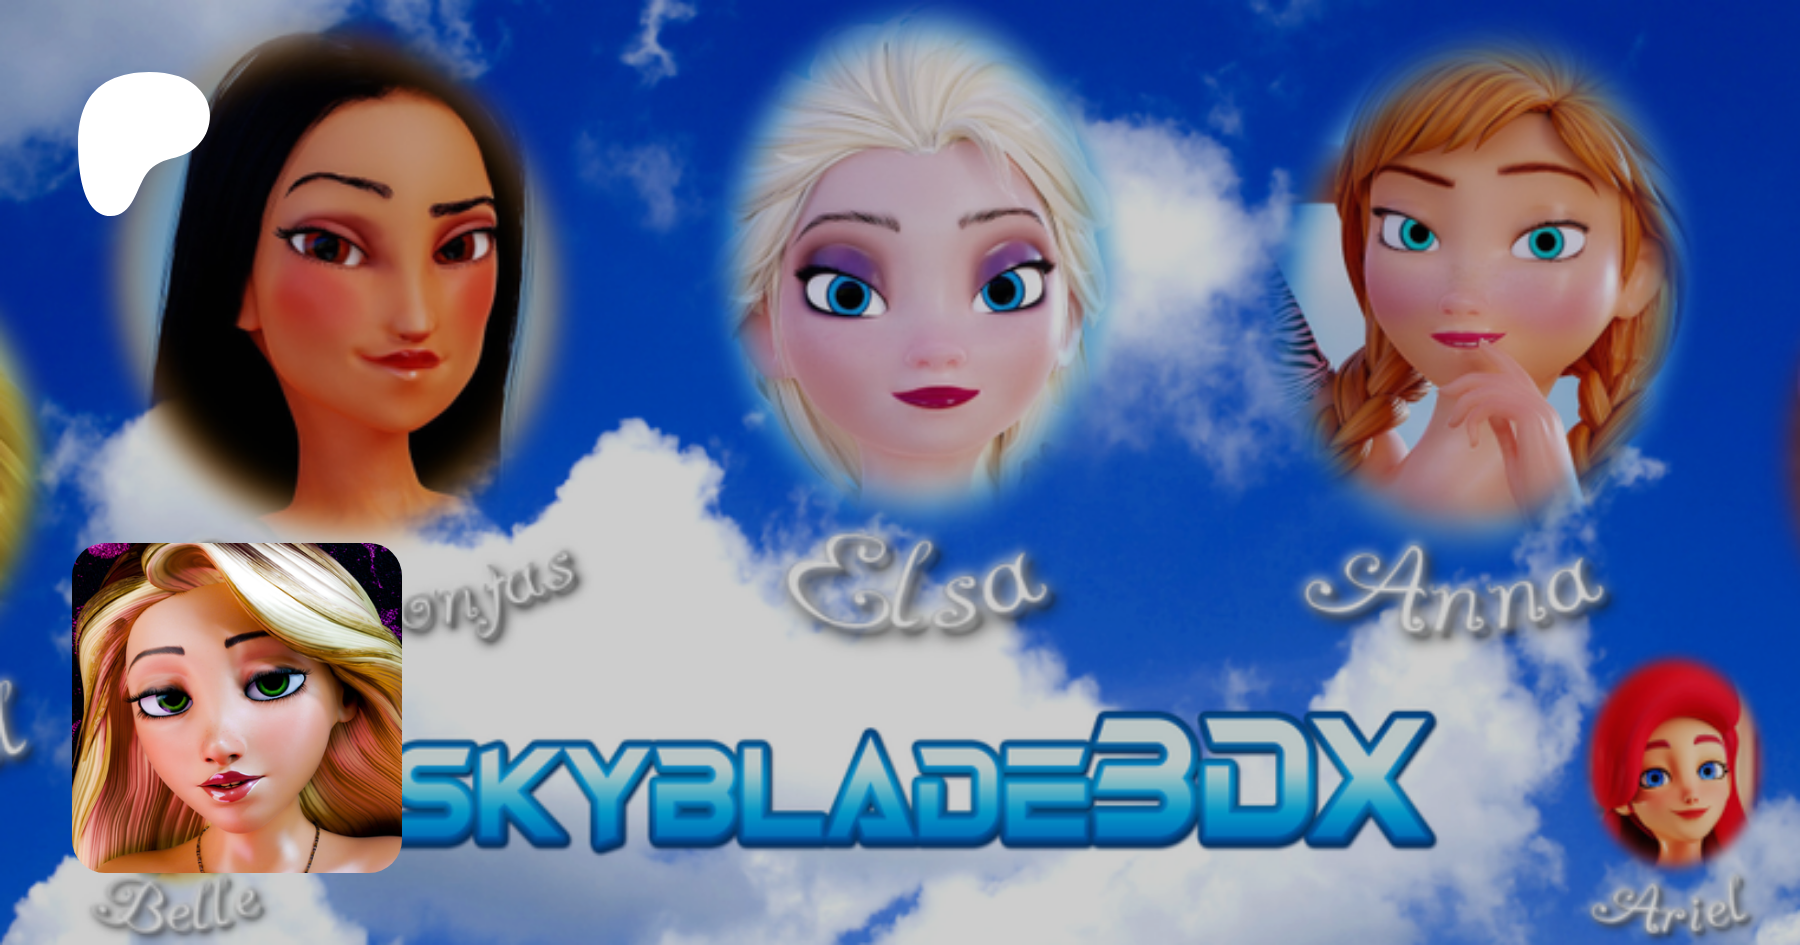 Skyblade3dx